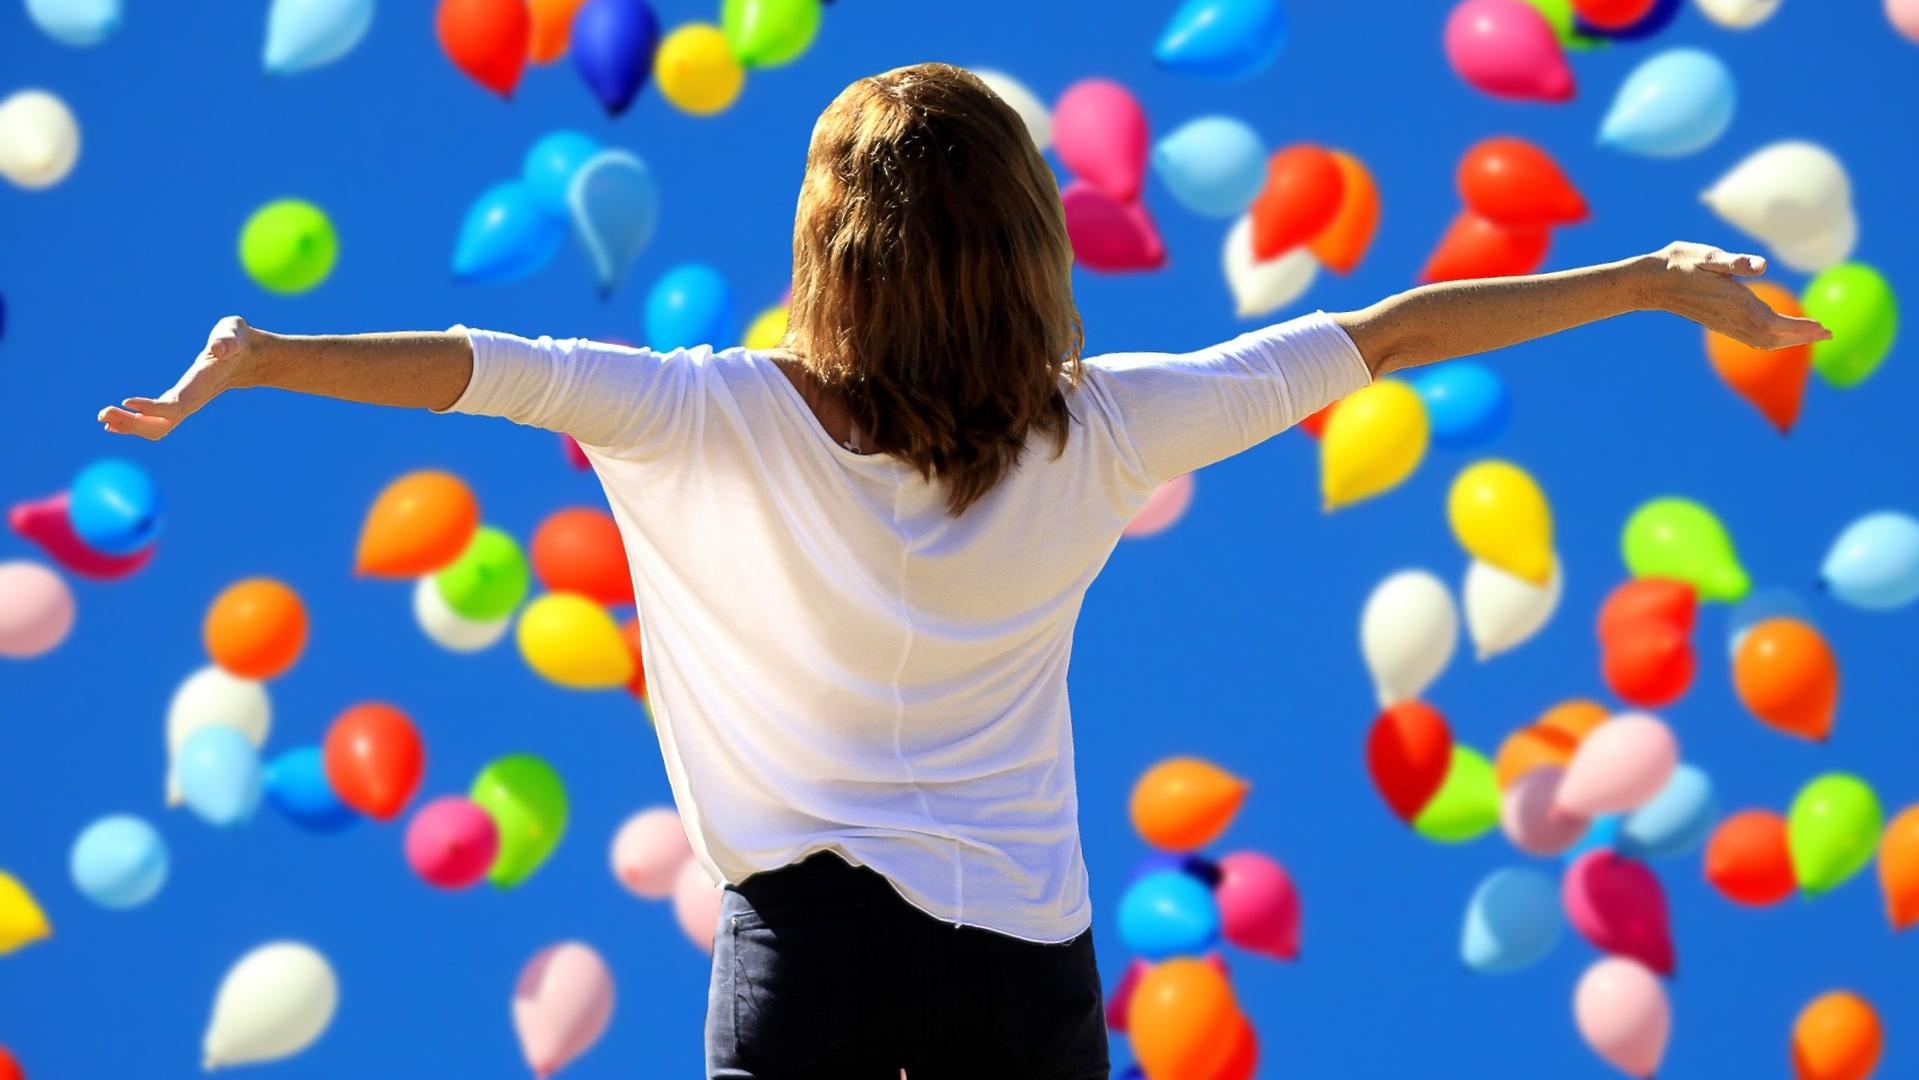 Stimmungsbild zum Beitrag: Eine Frau steht mit ausgebreiteten Armen vor dem Horizont, der gefüllt mit Luftballons ist.